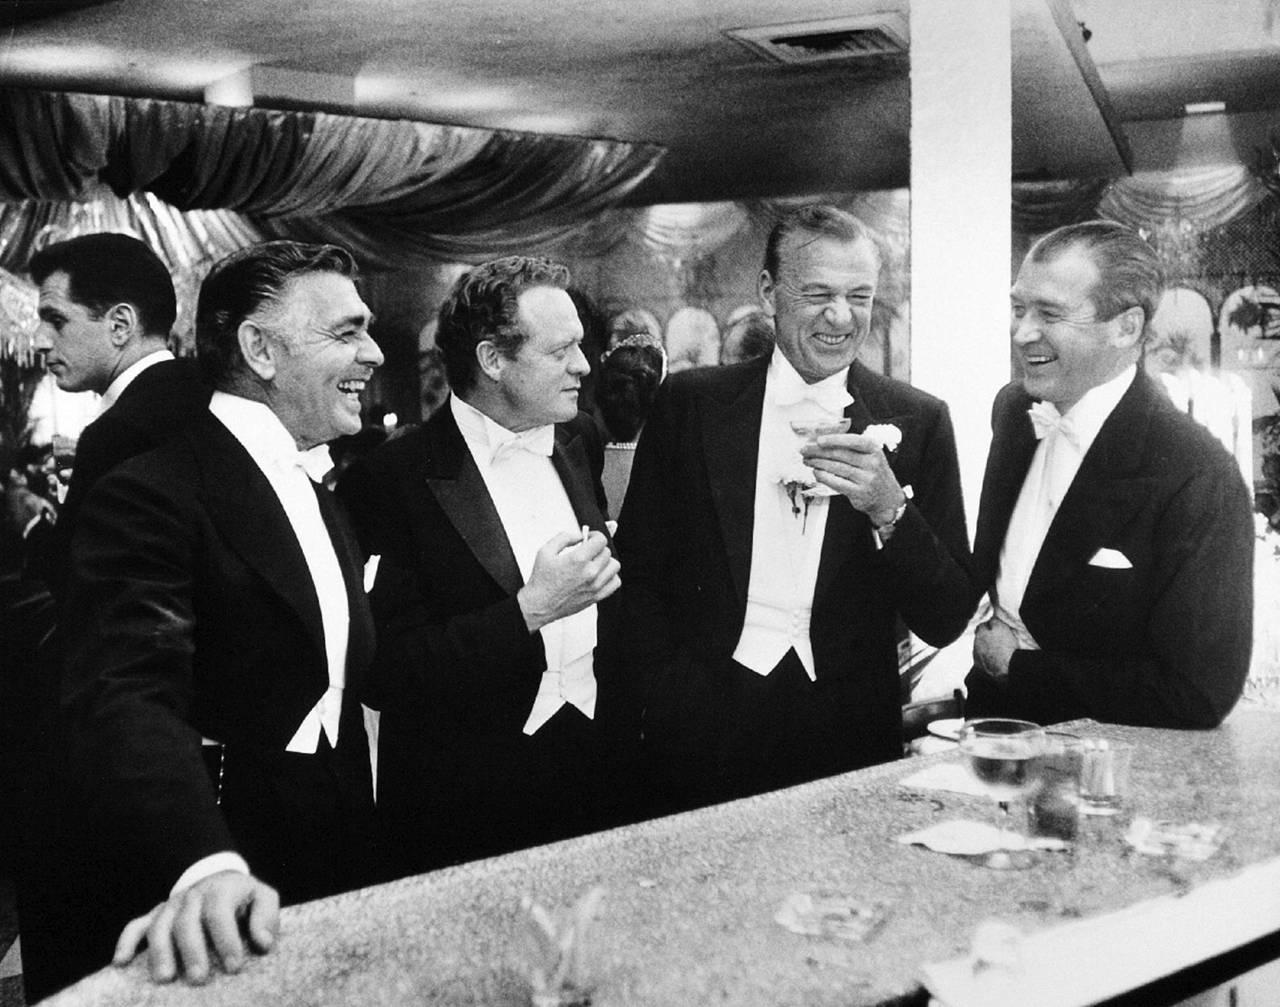 Schlanke Aarons
Kings of Hollywood, 1957, später gedruckt
Silber-Gelatine-Druck
16 x 20 Zoll 
Nachlassauflage von 250 Stück

Die Filmstars (von links nach rechts) Clark Gable (1901 - 1960), Van Heflin (1910 - 1971), Gary Cooper (1901 - 1961) und